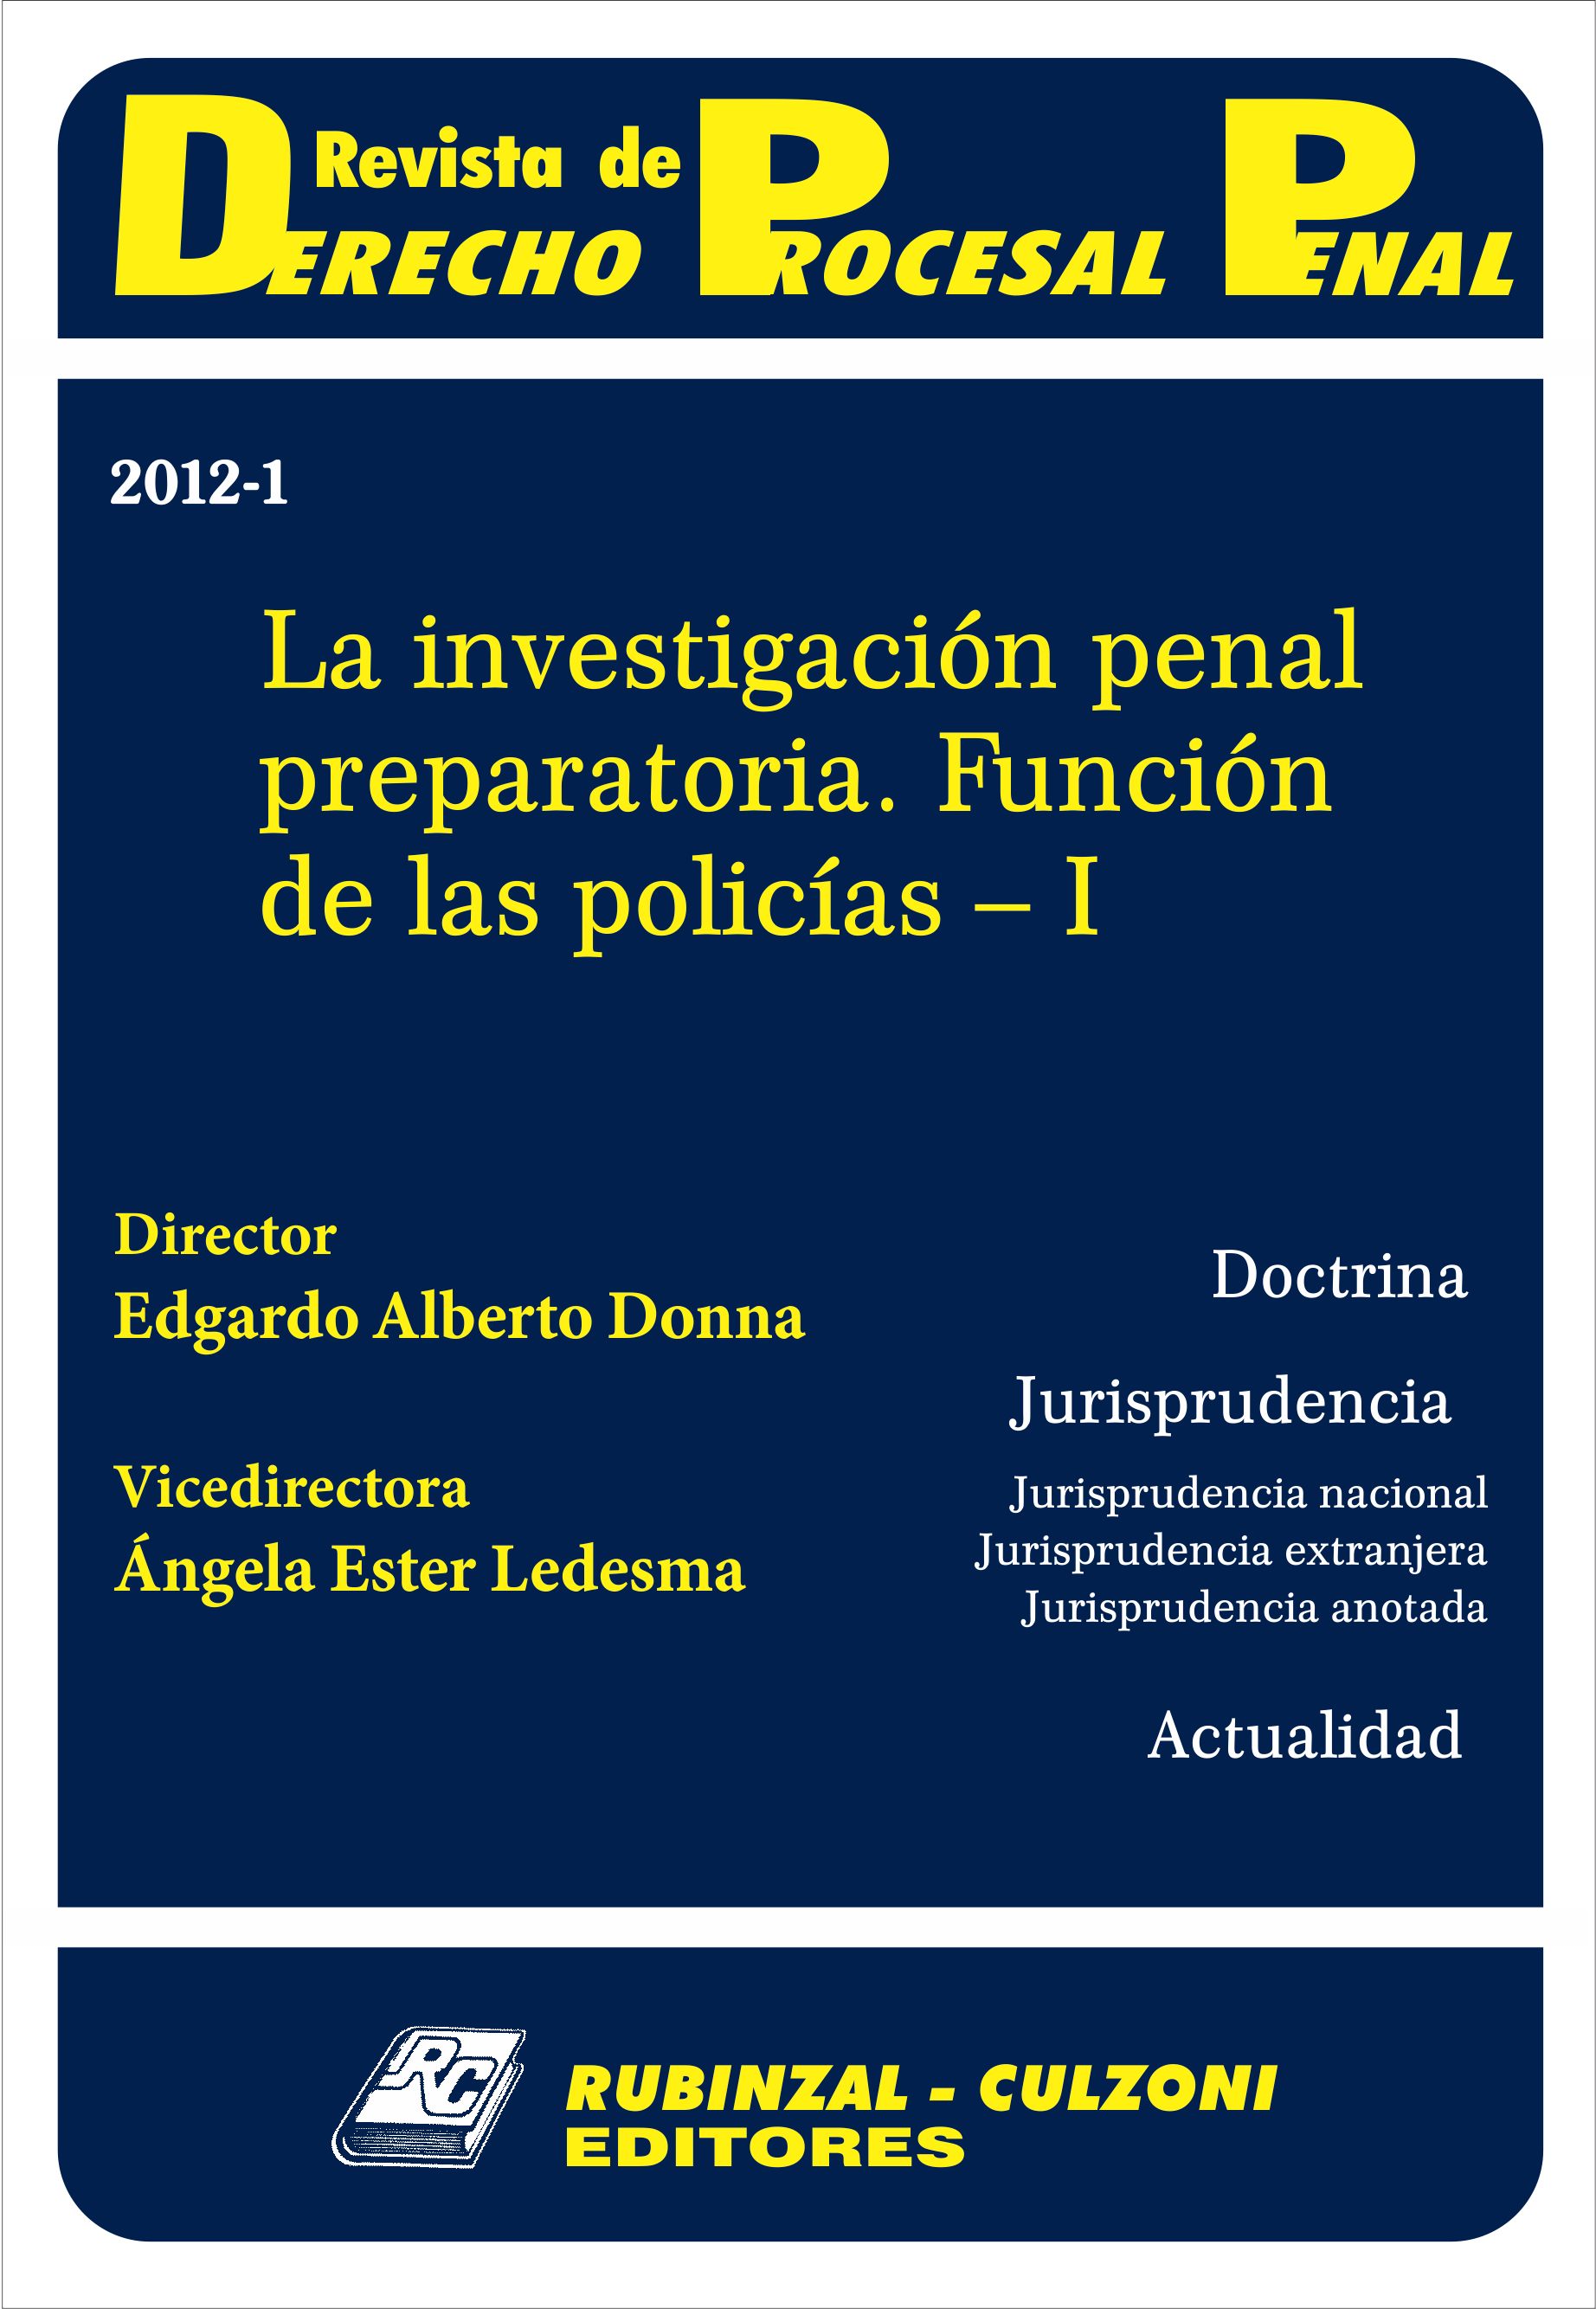 Revista de Derecho Procesal Penal - La investigación penal preparatoria